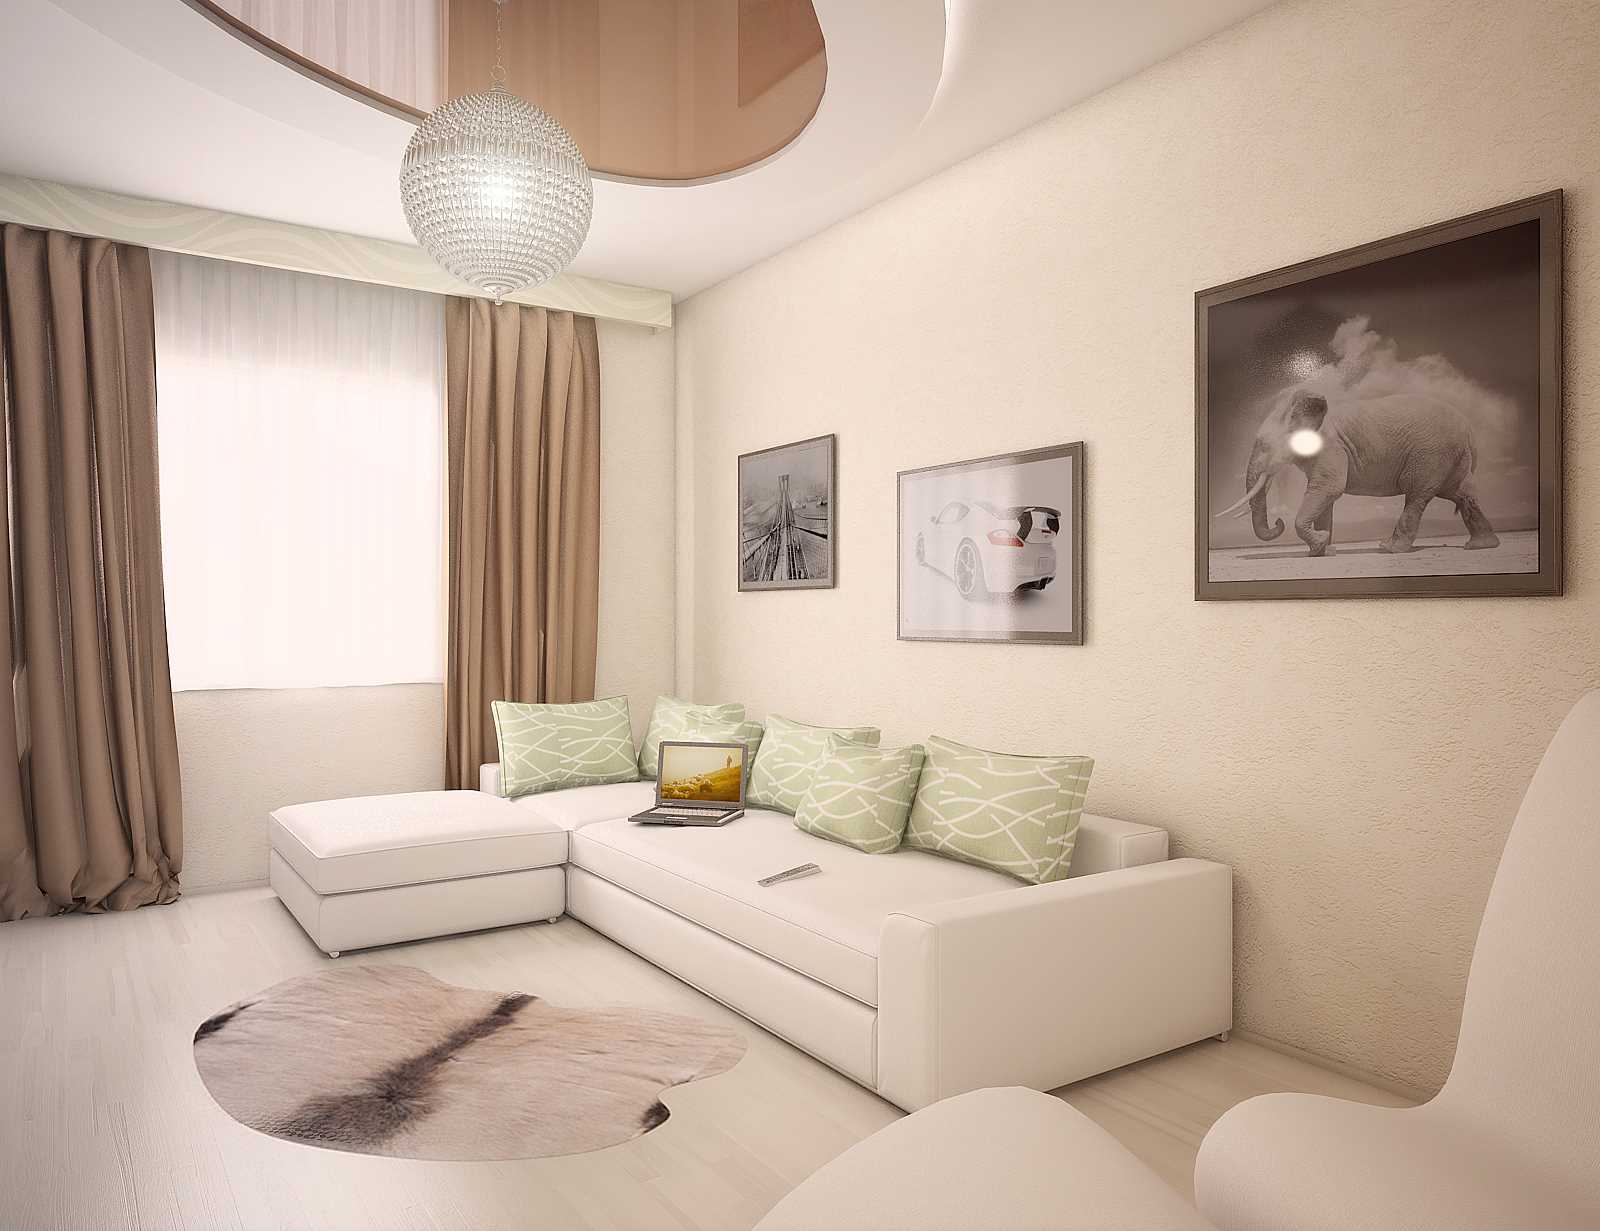 variant van het heldere ontwerp van het appartement is 70 m²